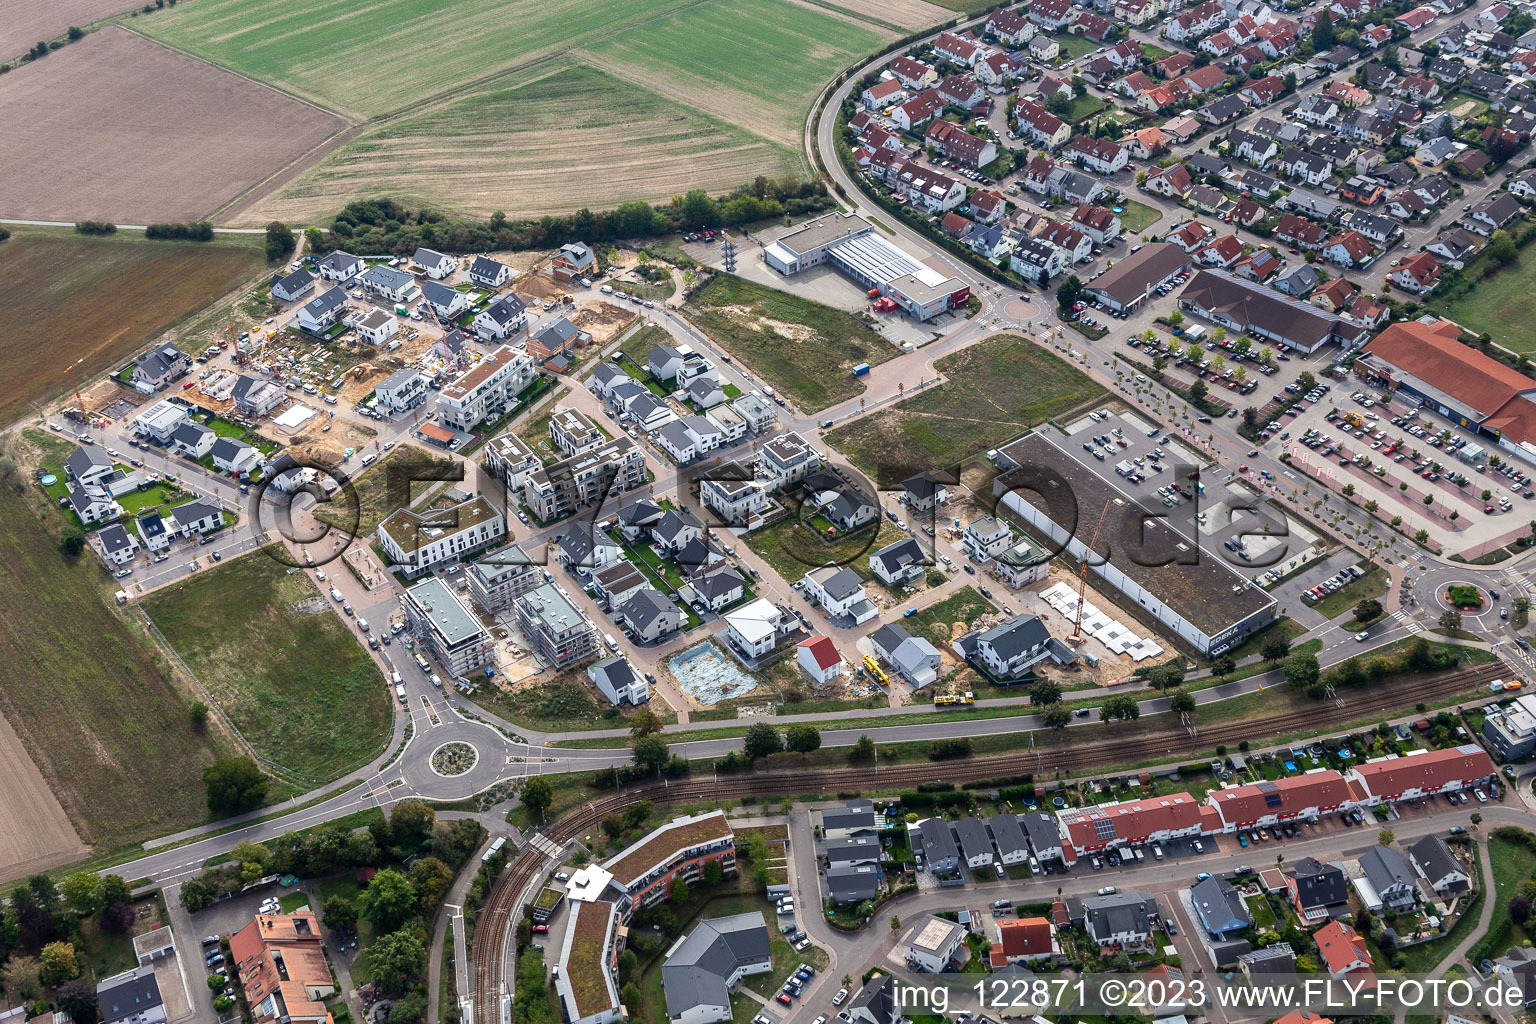 Oblique view of Quarter 2020 Biegen-Durlacher Weg development area in the district Hochstetten in Linkenheim-Hochstetten in the state Baden-Wuerttemberg, Germany